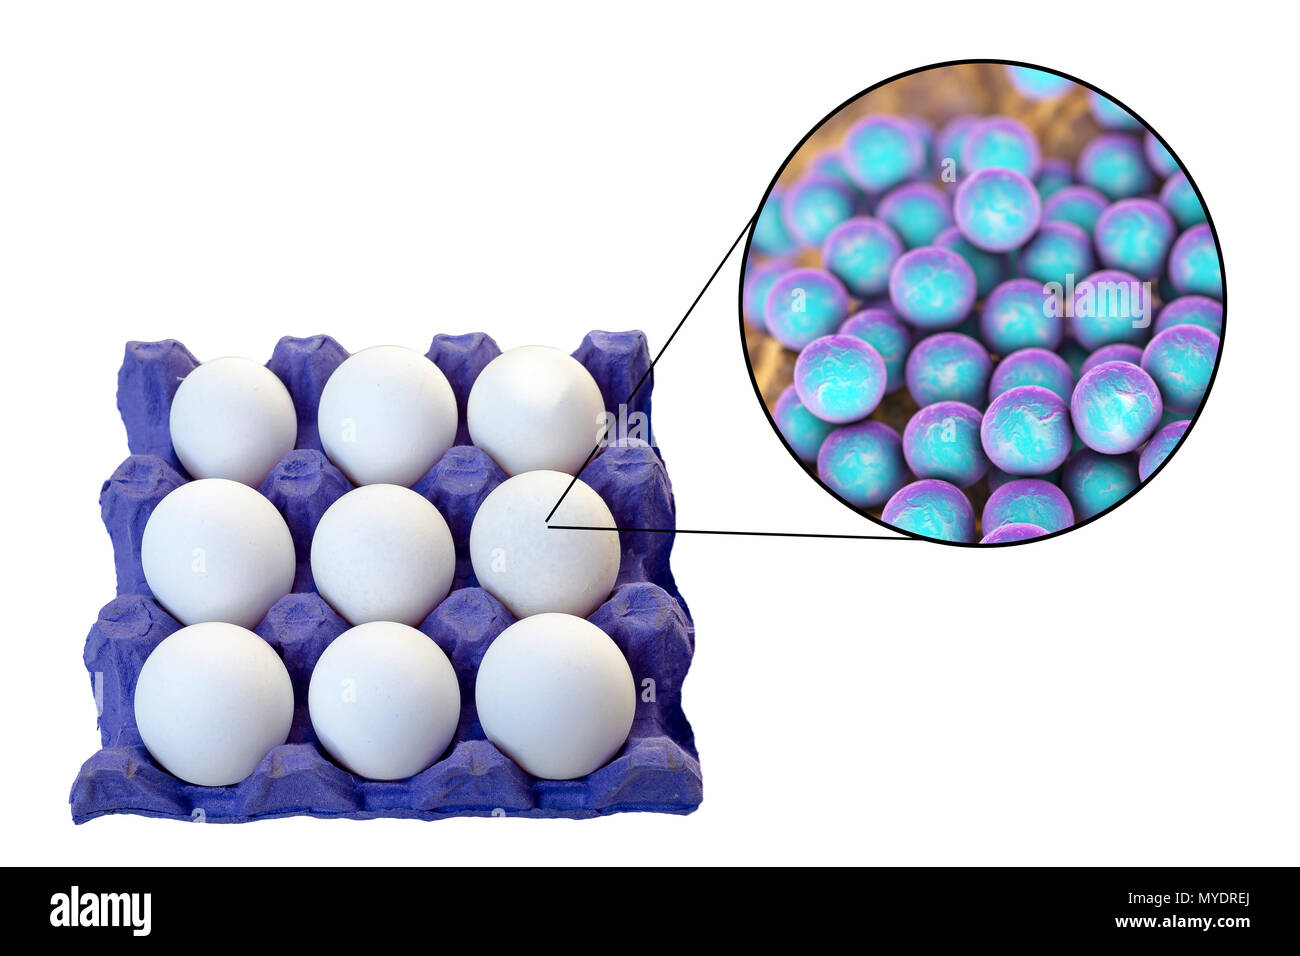 Huhn Eier als Quelle von Anti-staphylokokken Lebensmittelvergiftung, konzeptionelle Darstellung. Stockfoto